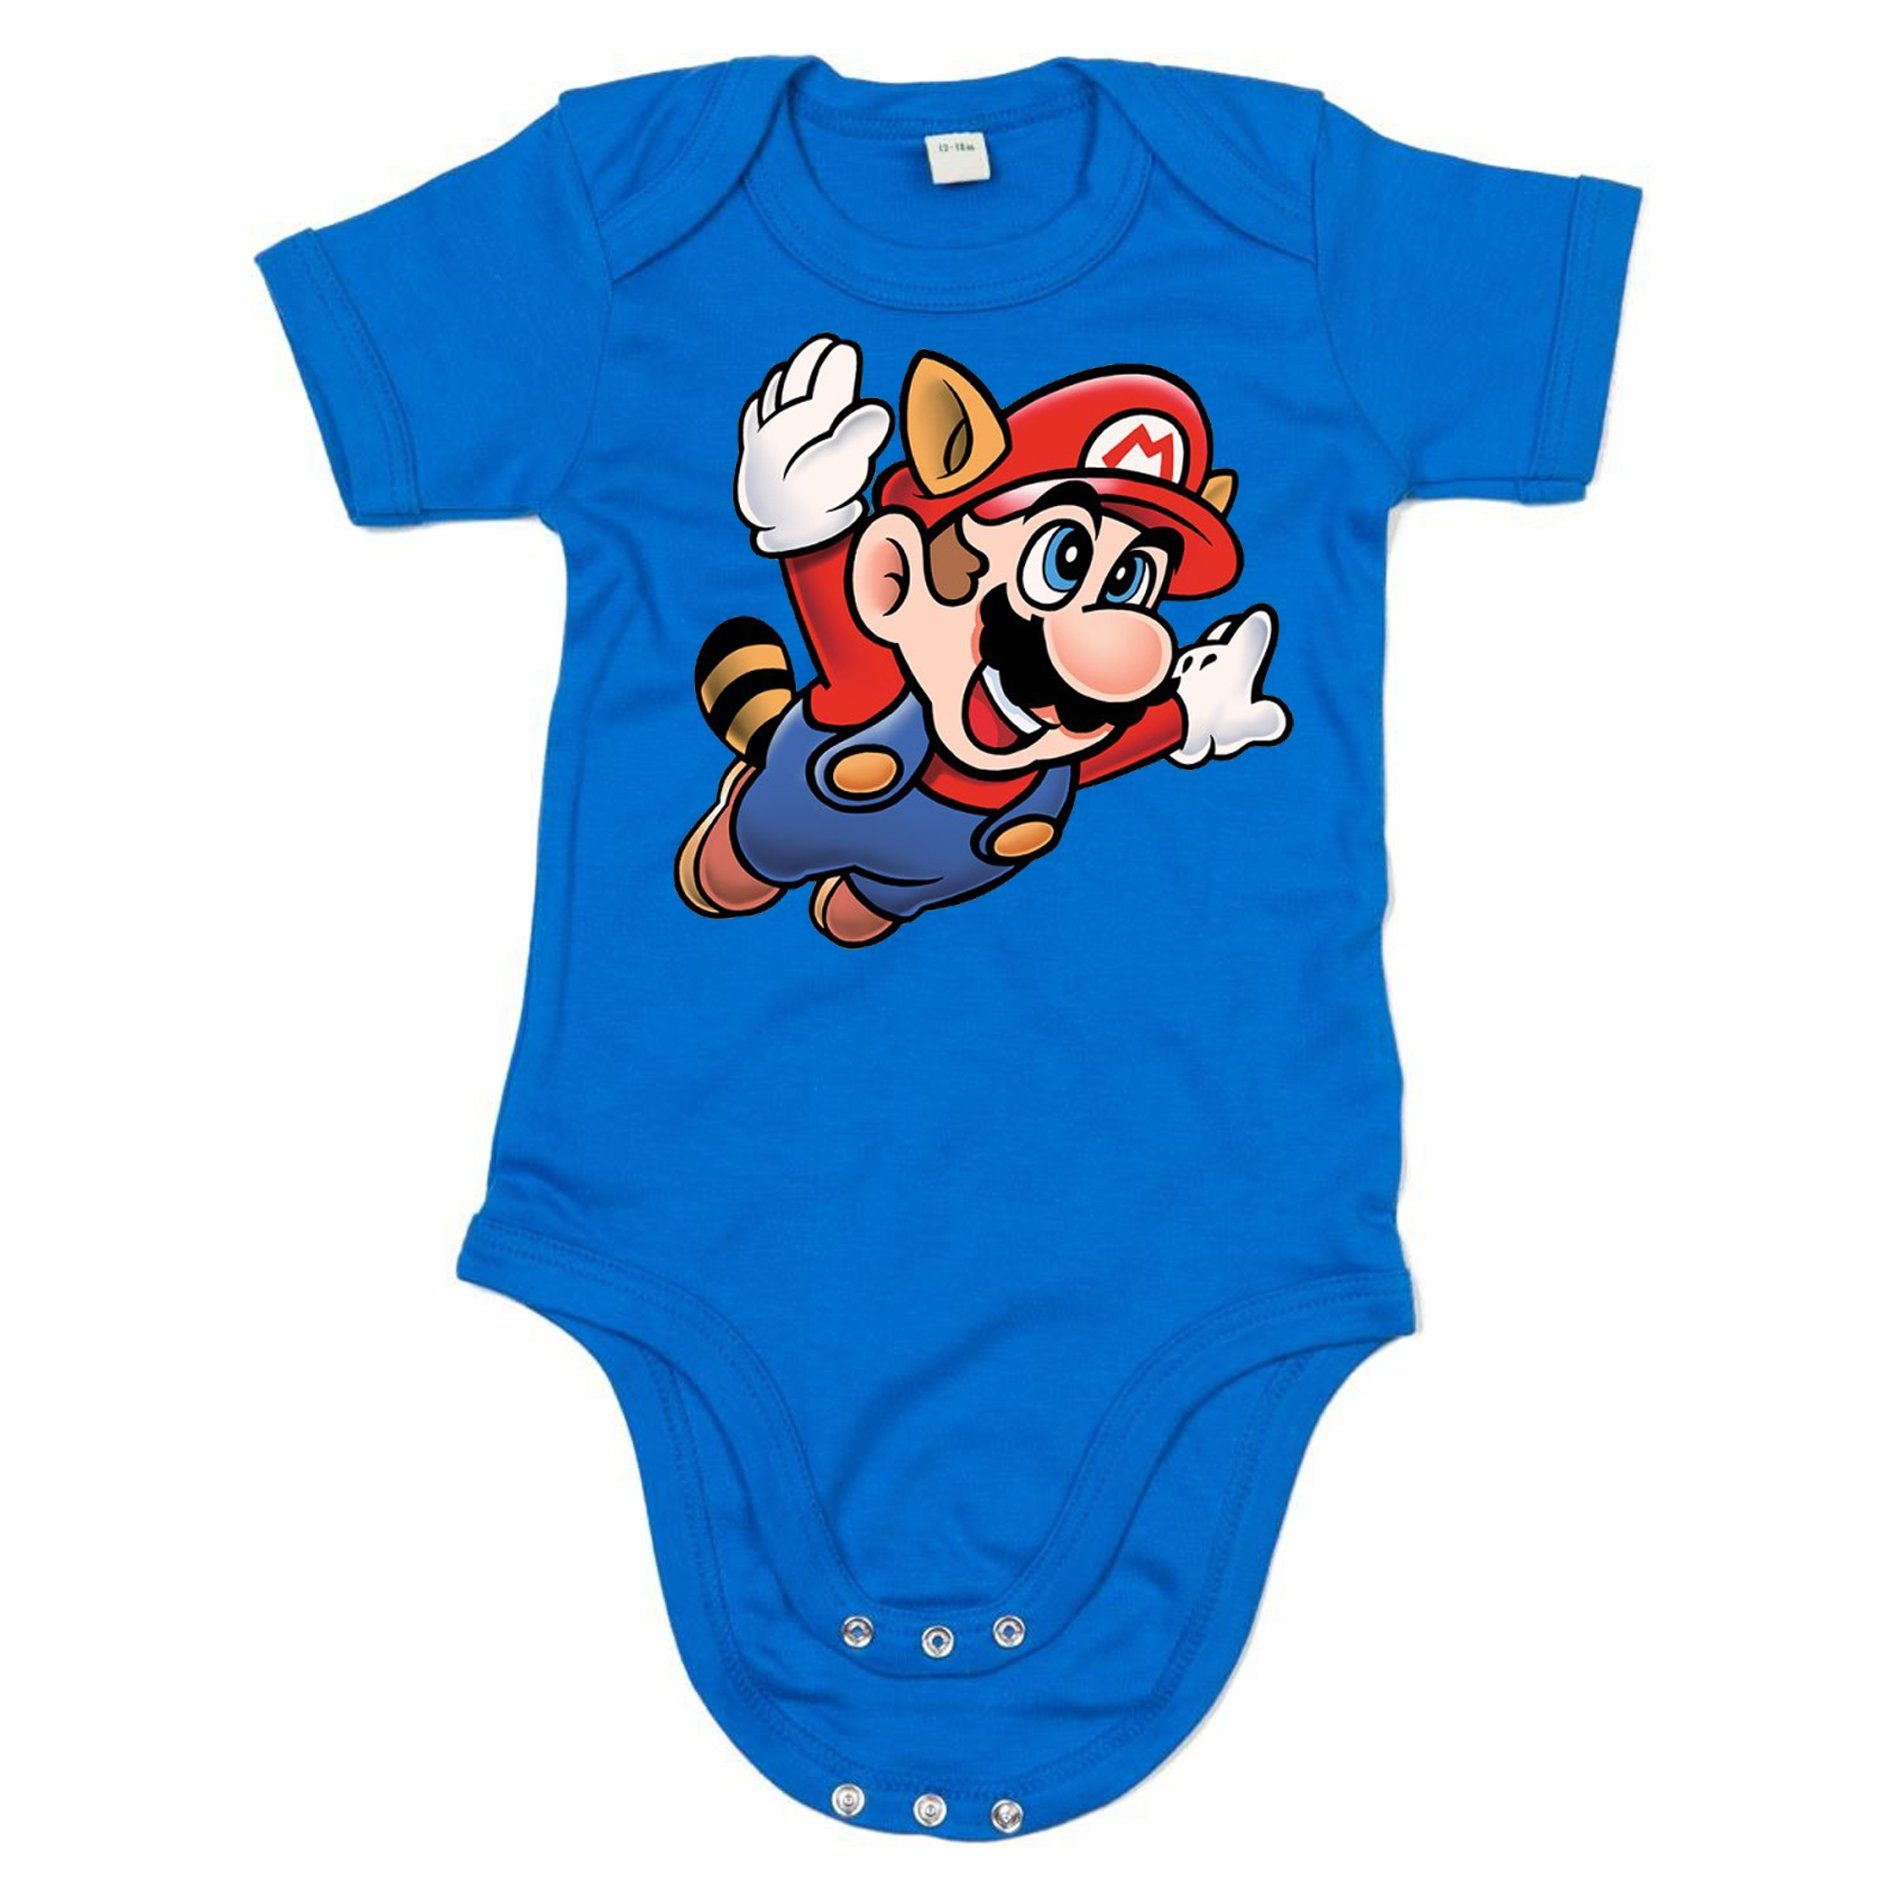 Blondie & Brownie Strampler Kinder Baby Super Mario 3 Fligh Nintendo Gamer Nerd Konsole Blau